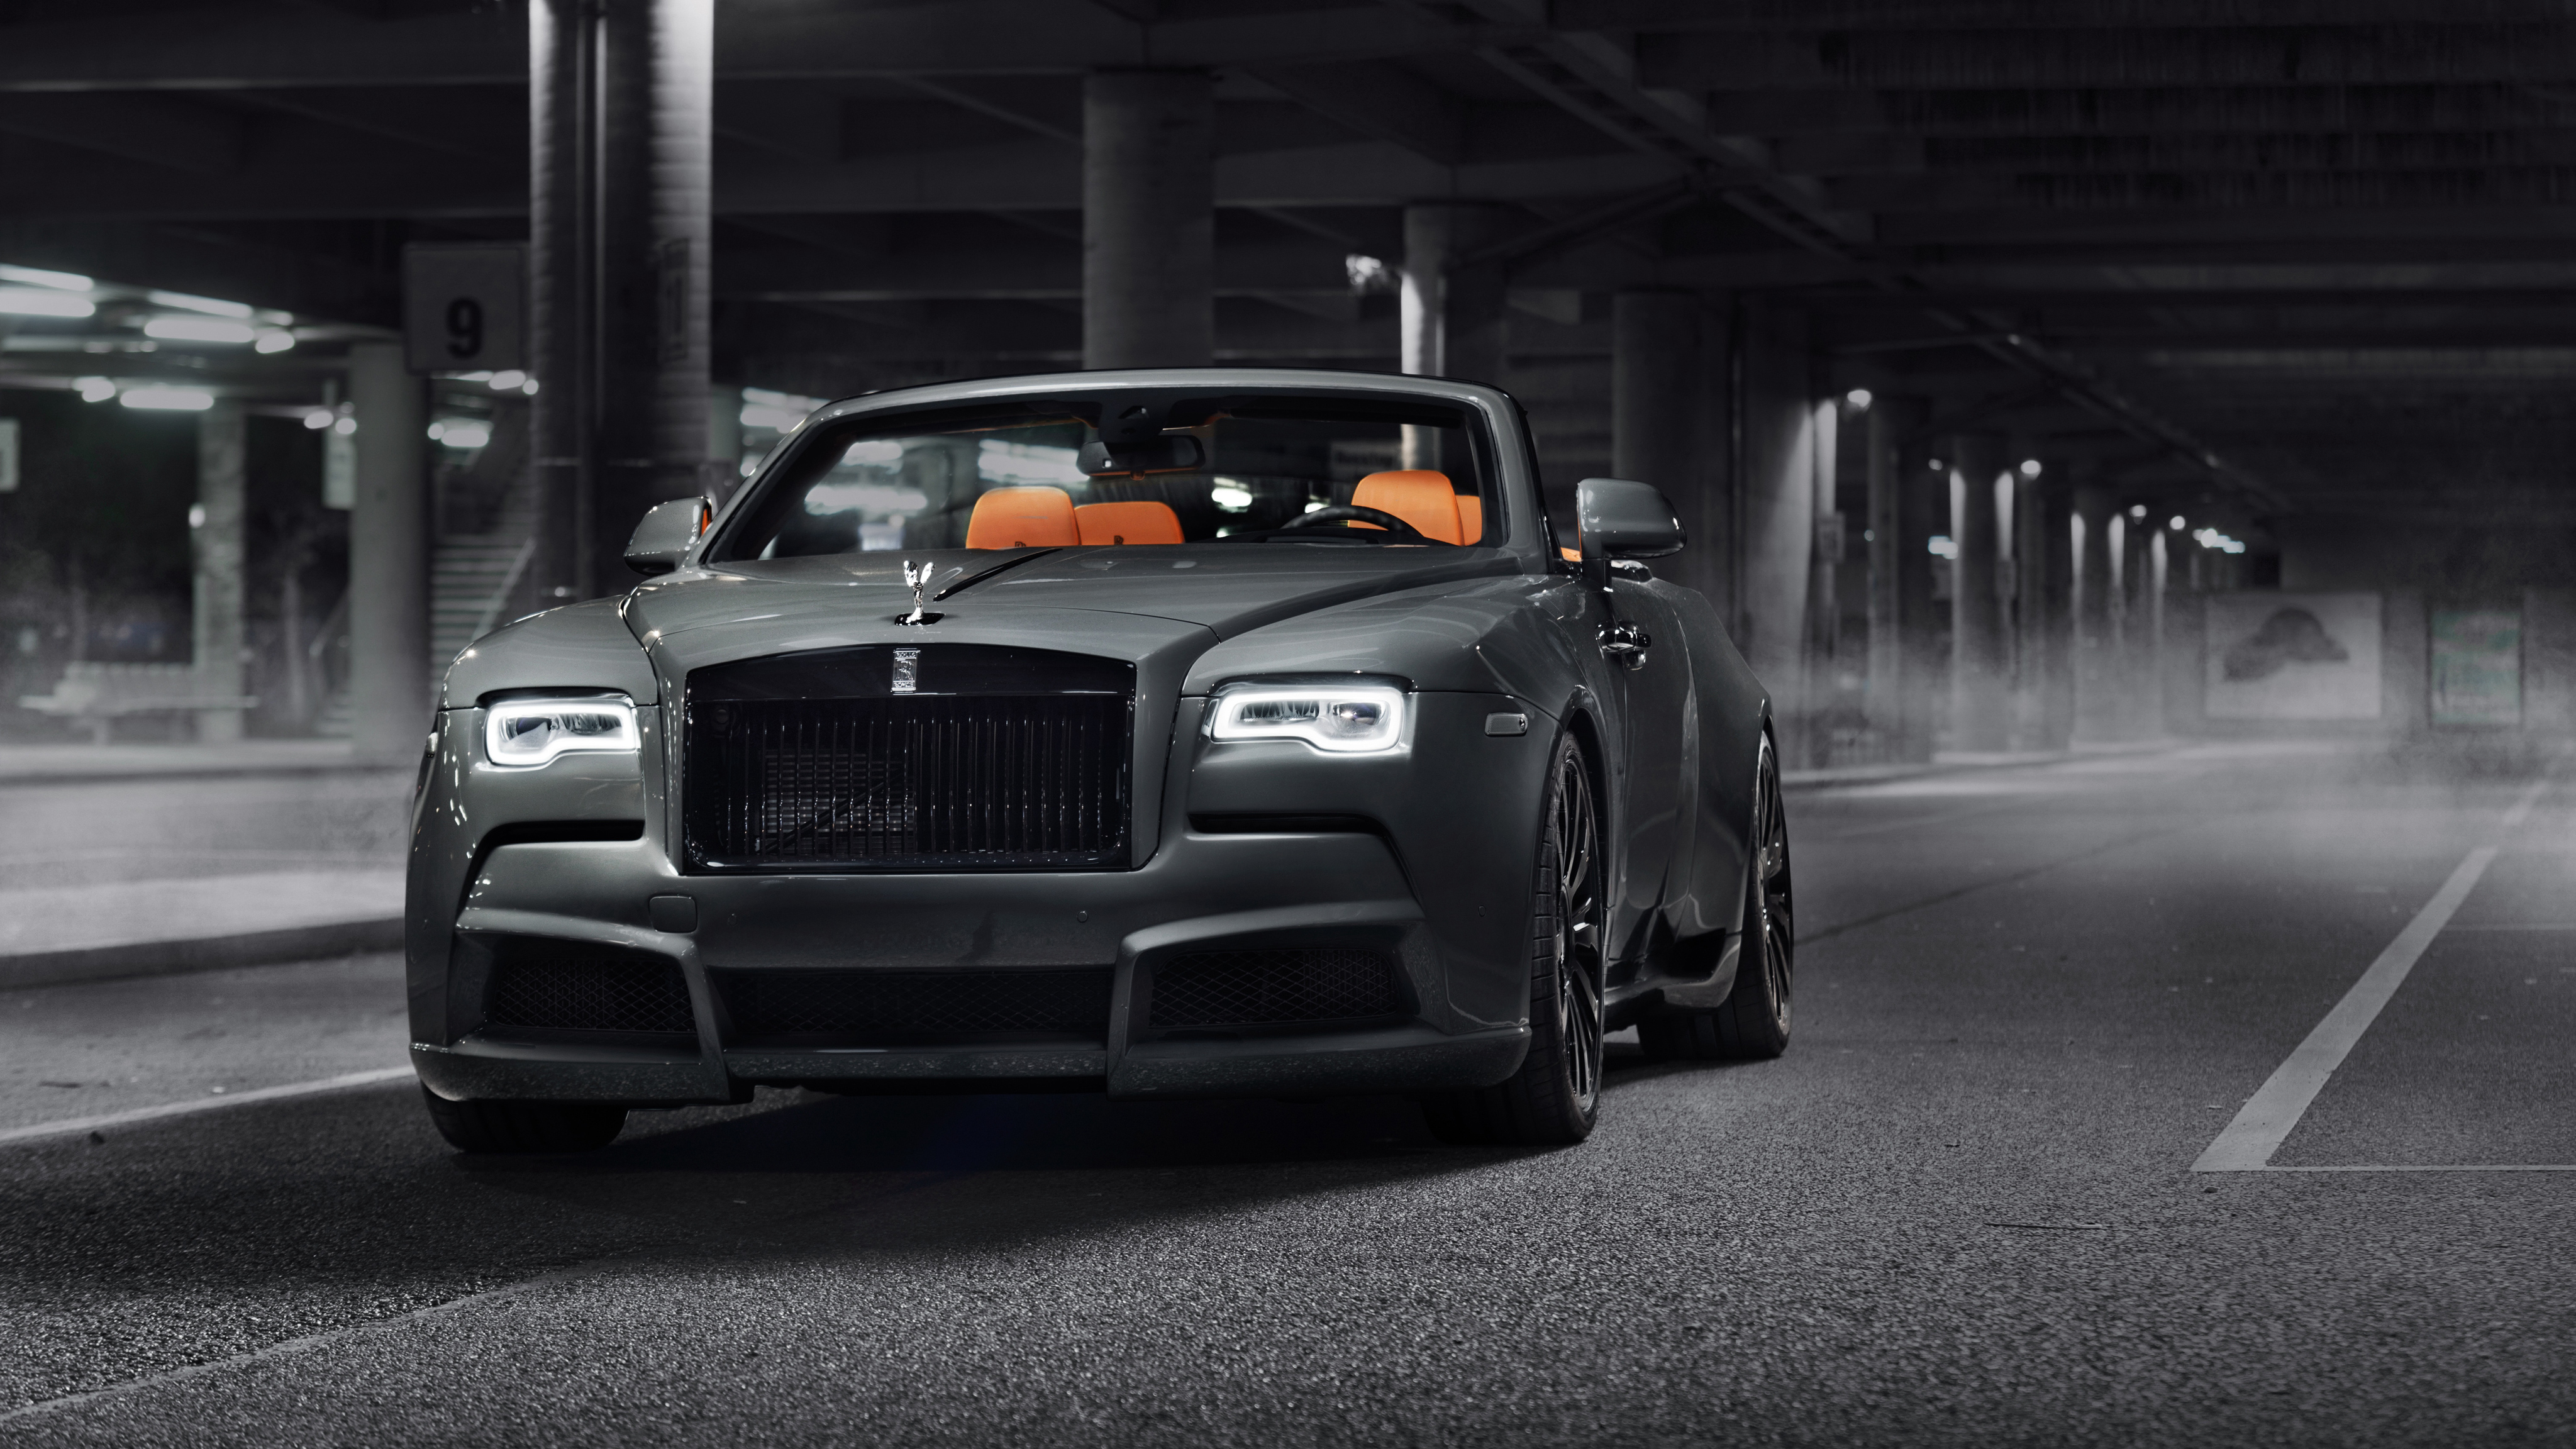 2018 Rolls Royce Dawn Overdose By Spofec 4k , HD Wallpaper & Backgrounds